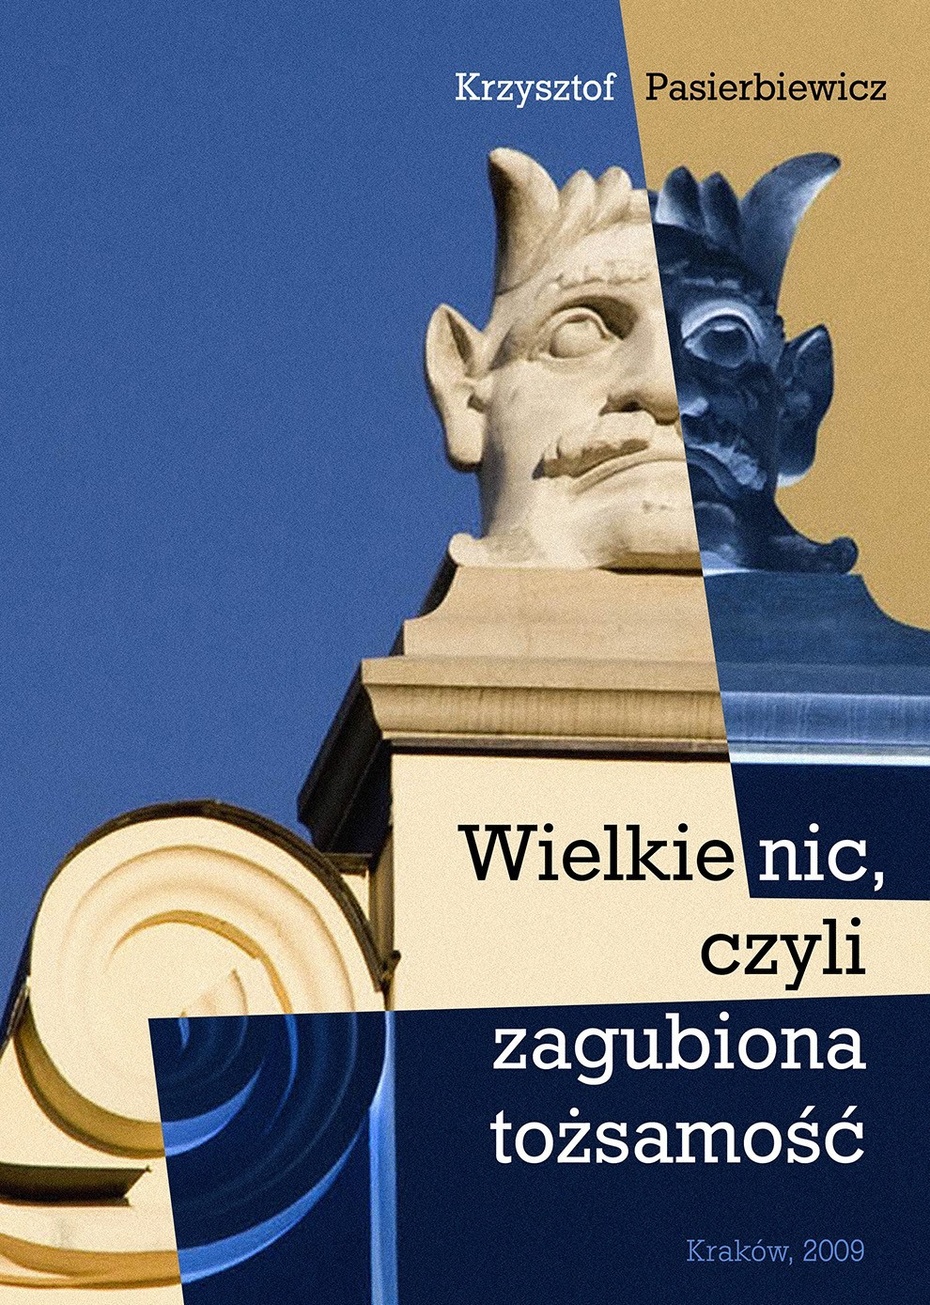 Okładka książki poszukiwanej bezskutecznie przez "salon" podwawelskiego Krakówka.